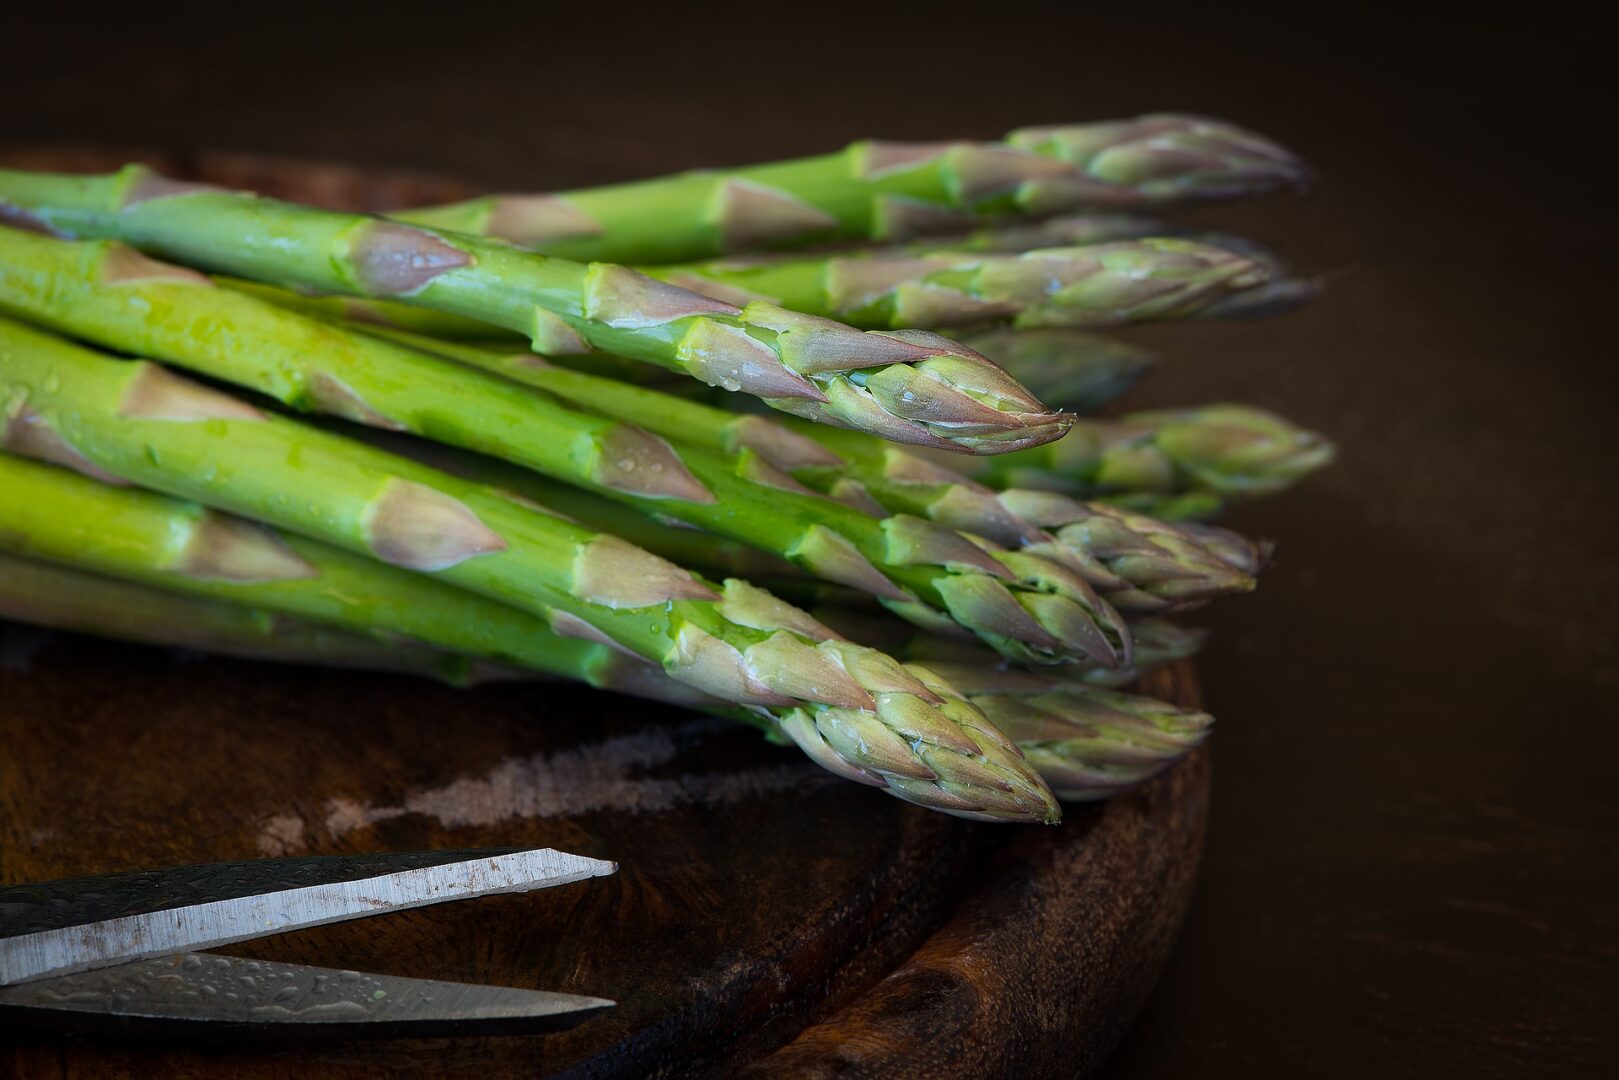 Stalks for fresh asparagus